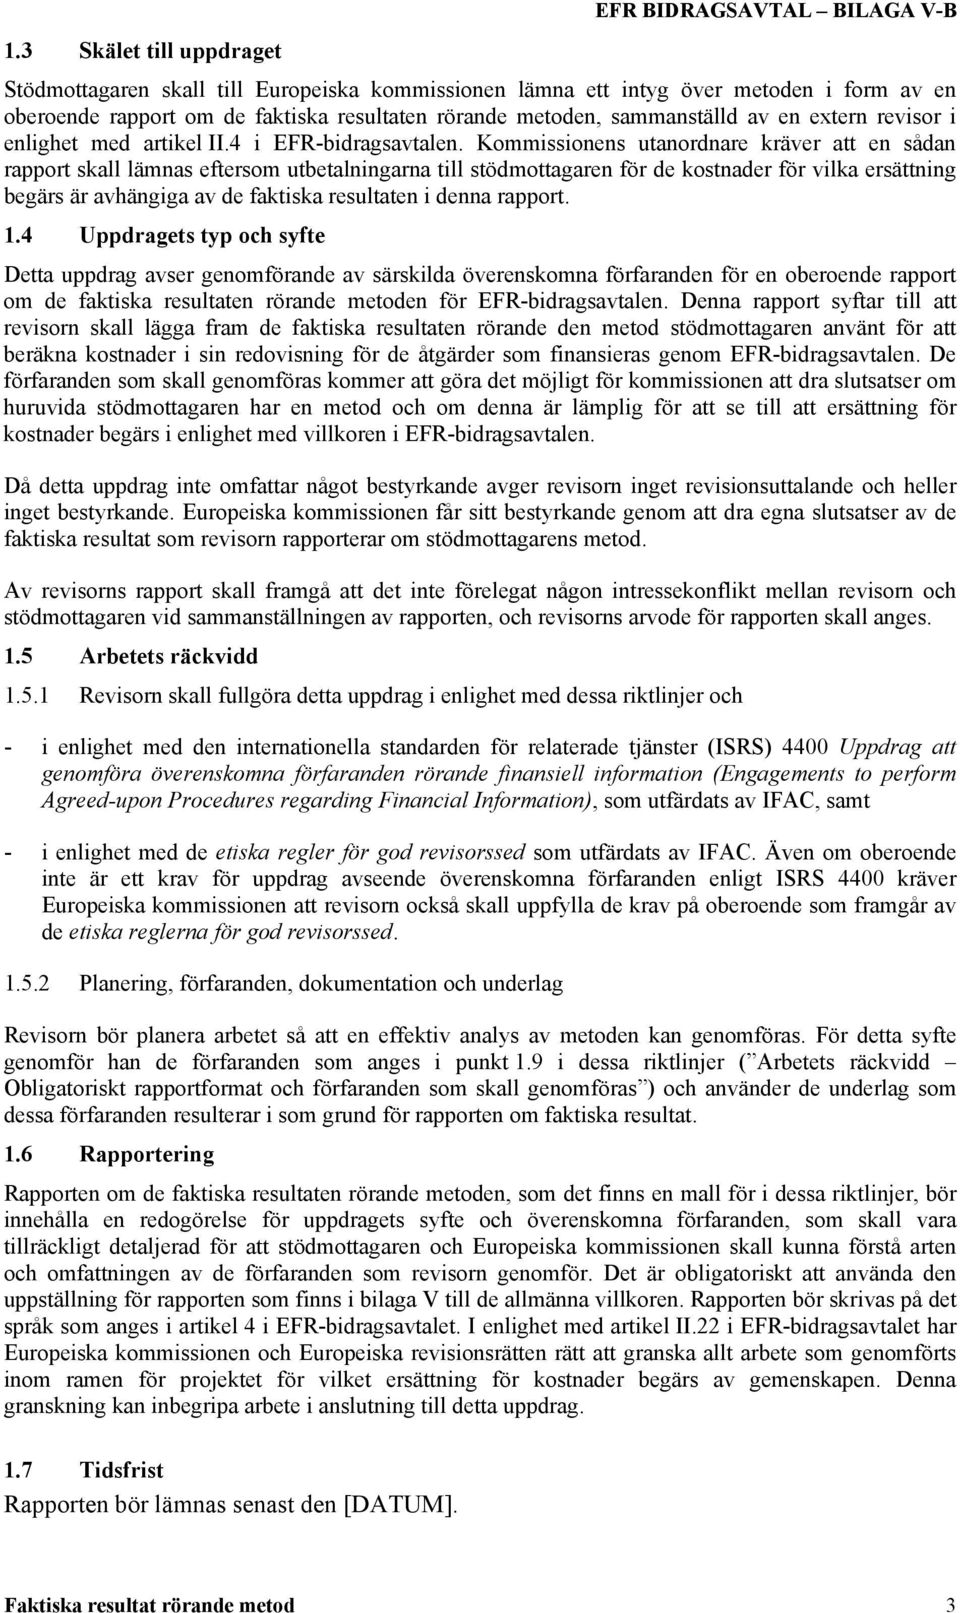 extern revisor i enlighet med artikel II.4 i EFR-bidragsavtalen.